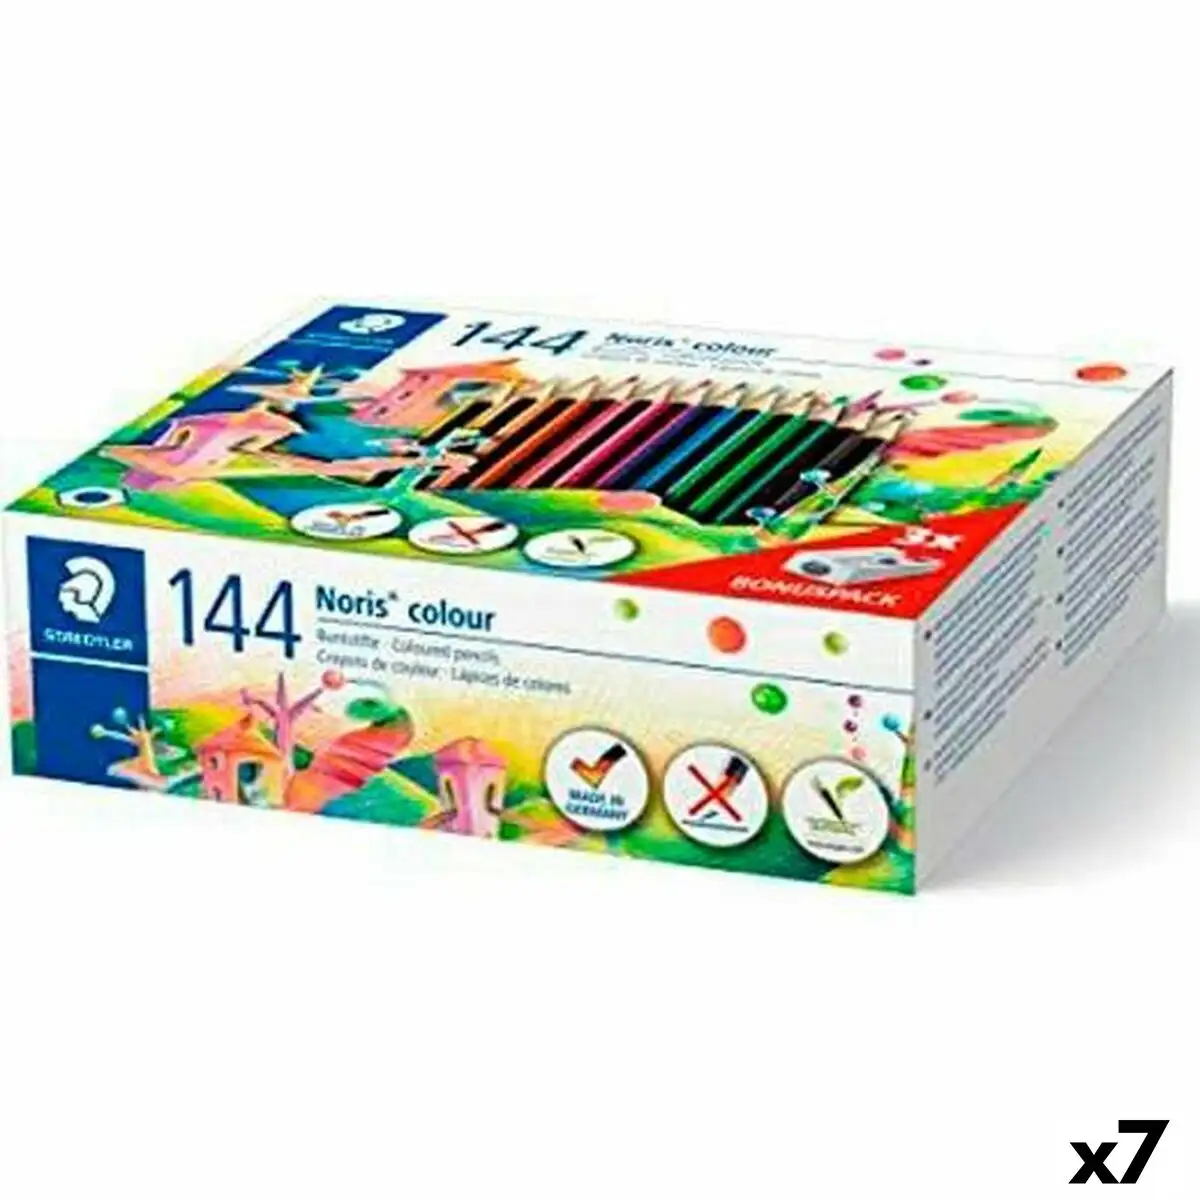 Crayons de couleur staedtler noris colour wopex lot 7 unites _6638. Bienvenue chez DIAYTAR SENEGAL - Où Chaque Achat est un Geste d'Amour. Découvrez notre sélection minutieuse et choisissez des articles qui témoignent de votre passion.